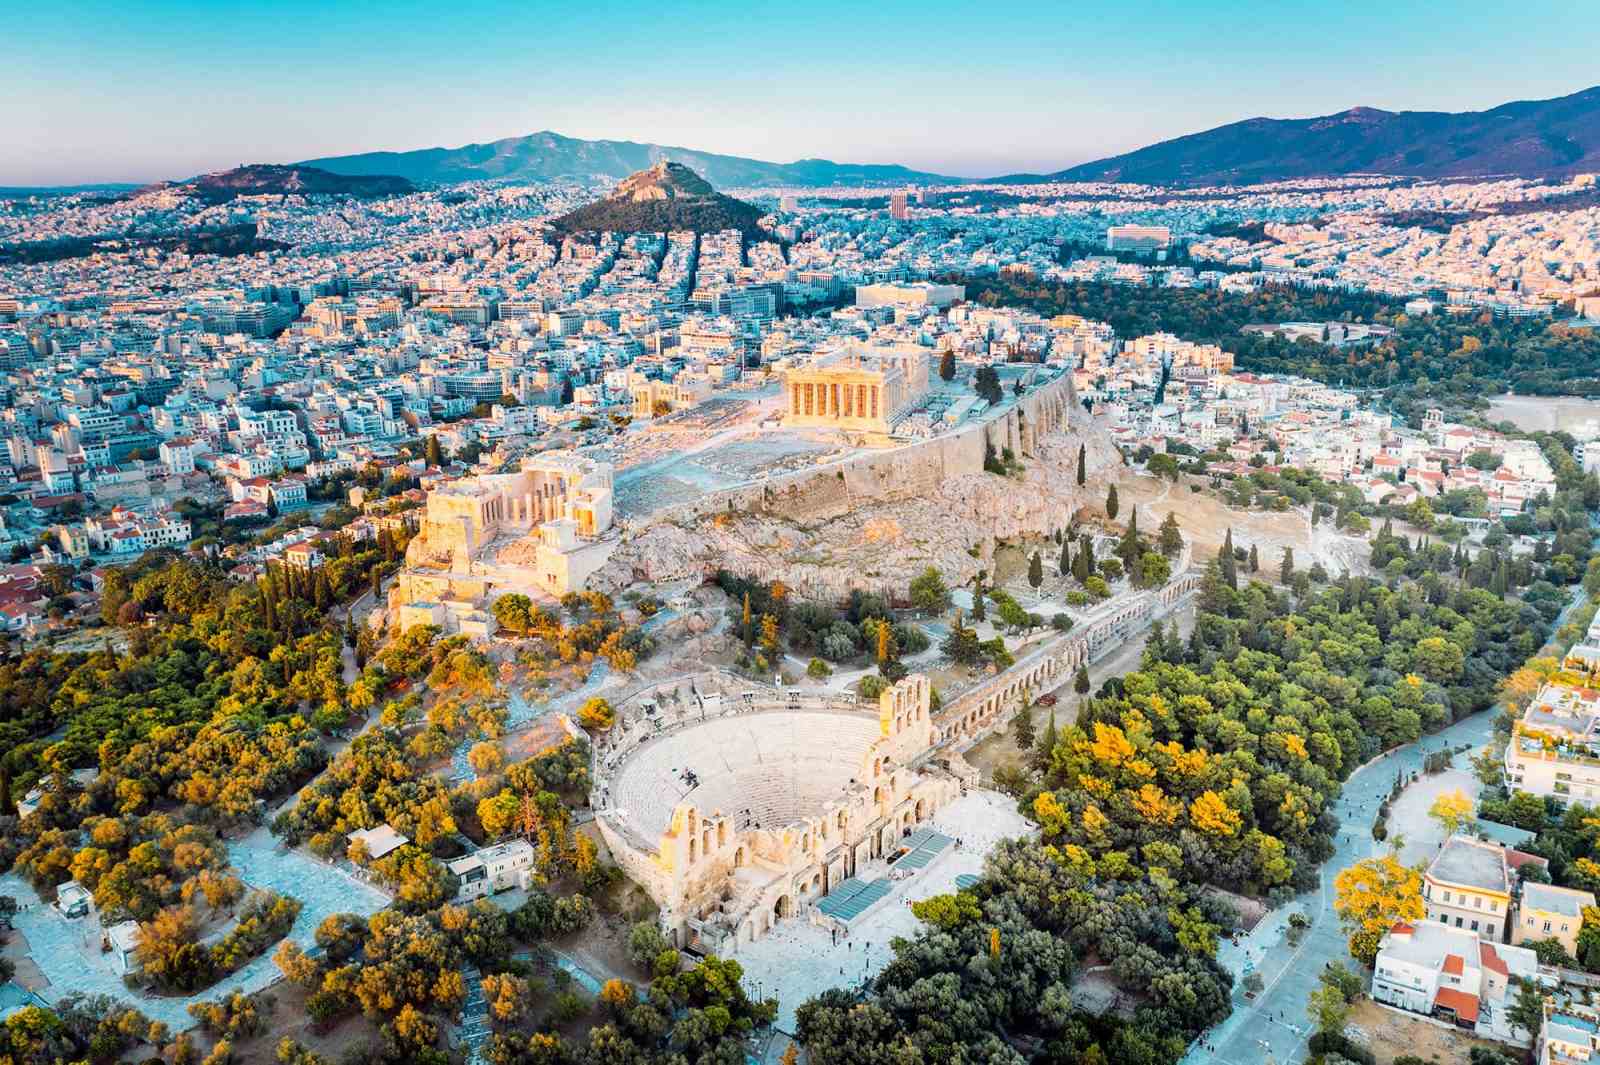  عکس کشور یونان